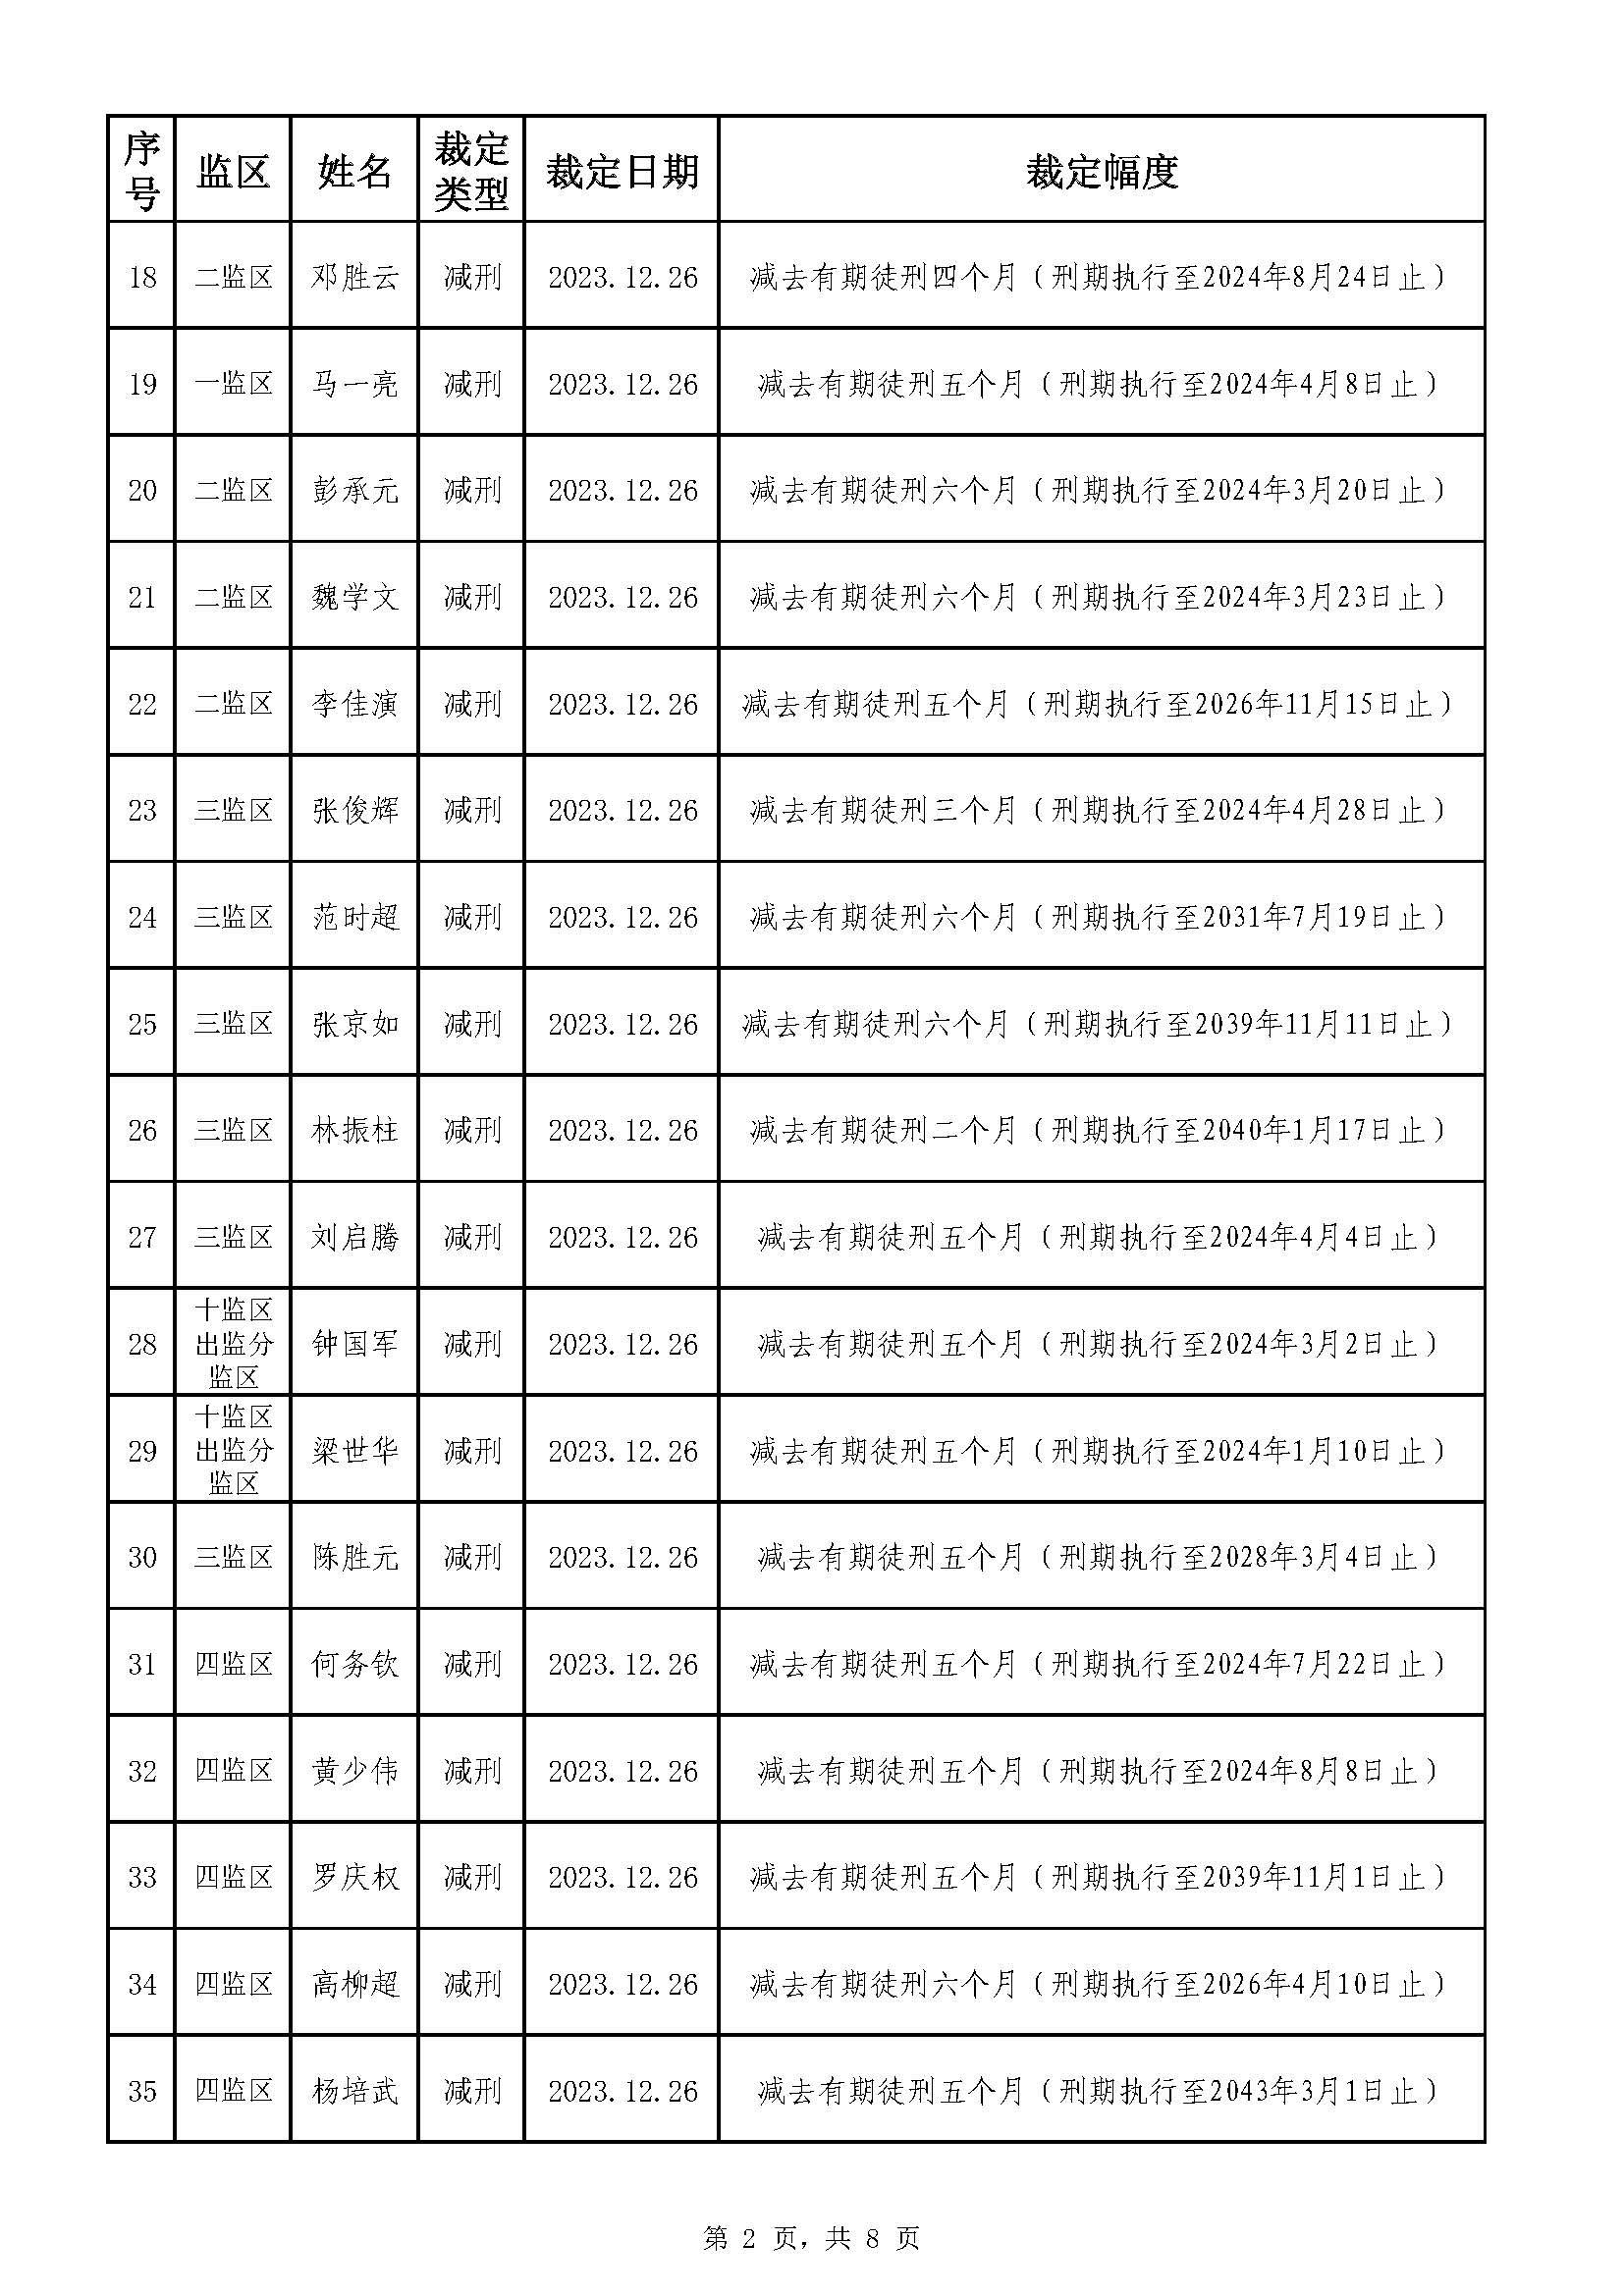 213.广东省明康监狱2023年第五批减刑假释裁定榜（公示）_页面_2.jpg